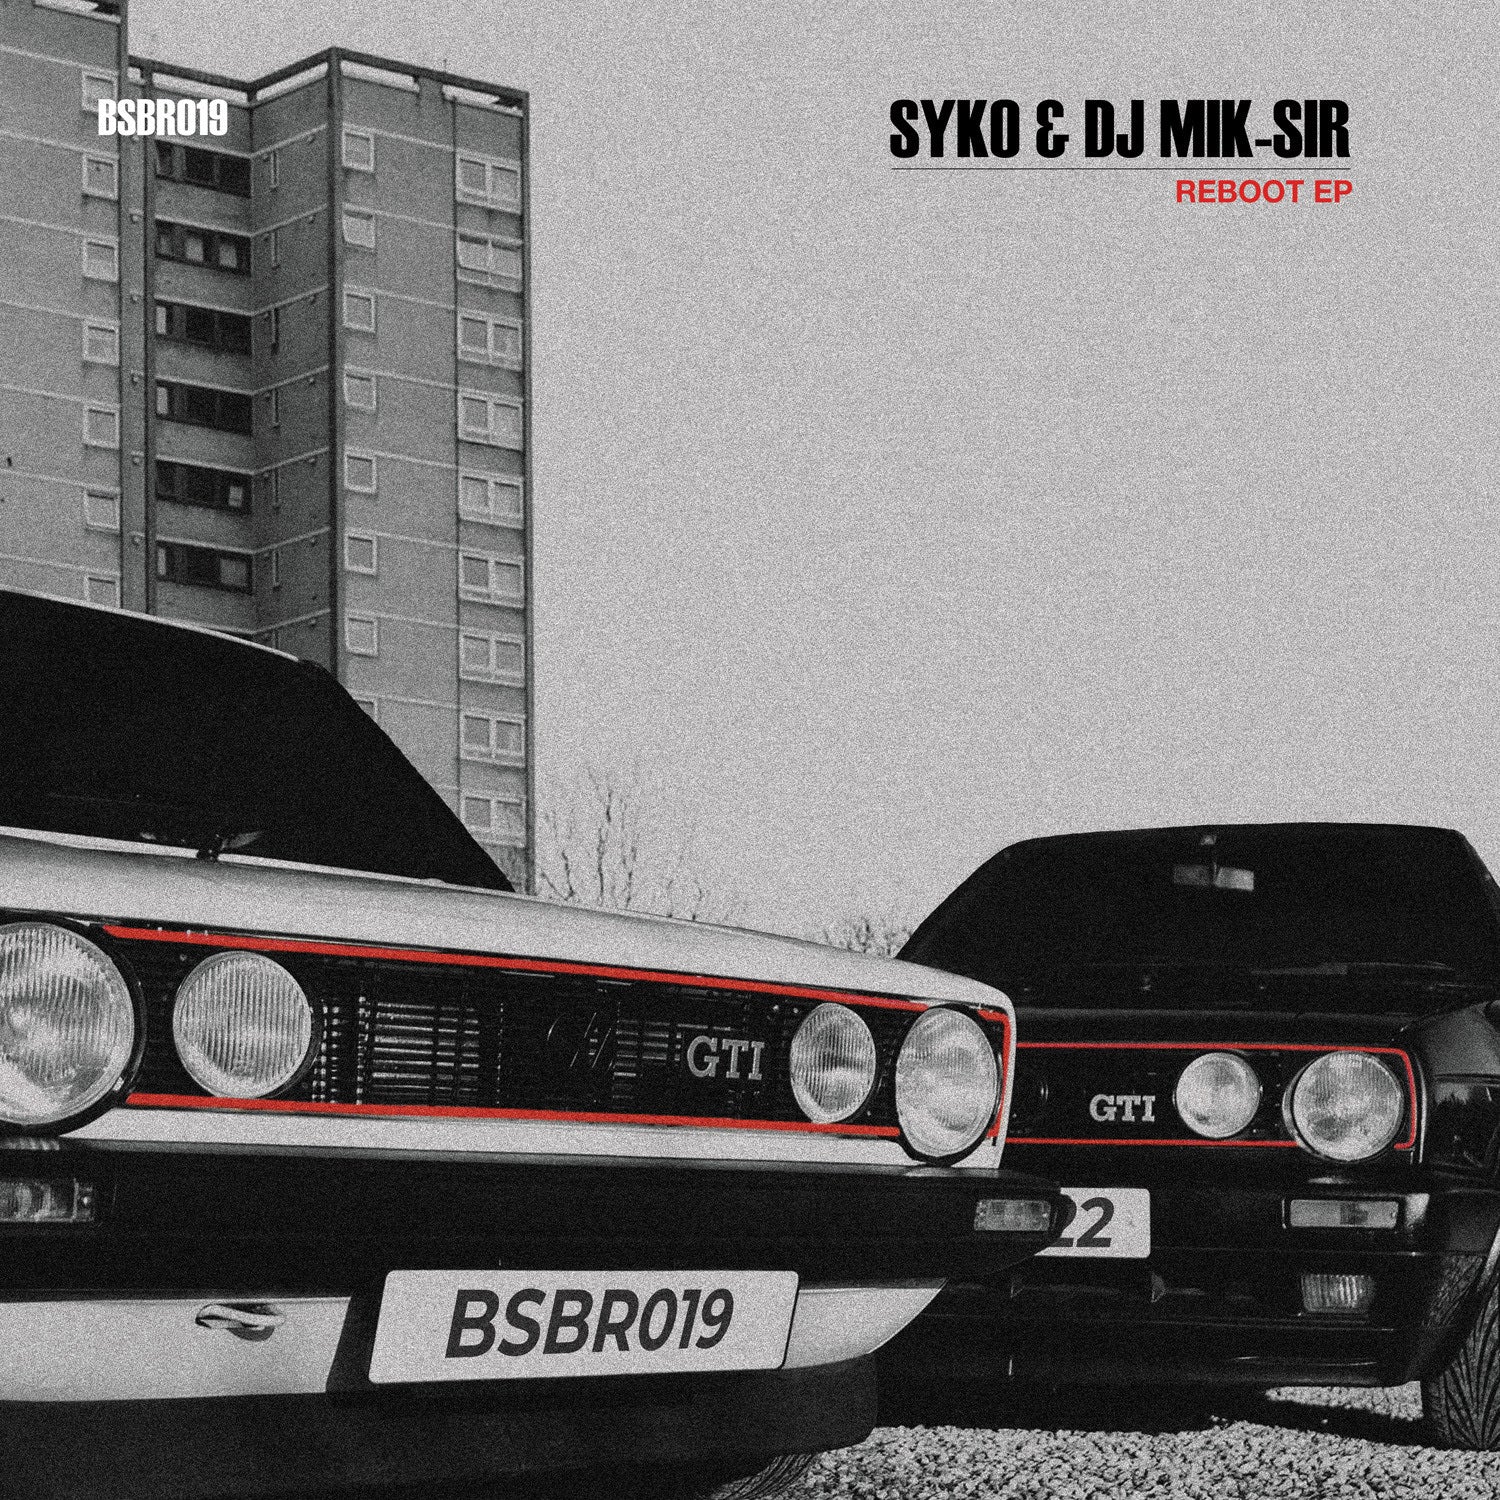 Syko & DJ Mik-Sir - Reboot EP